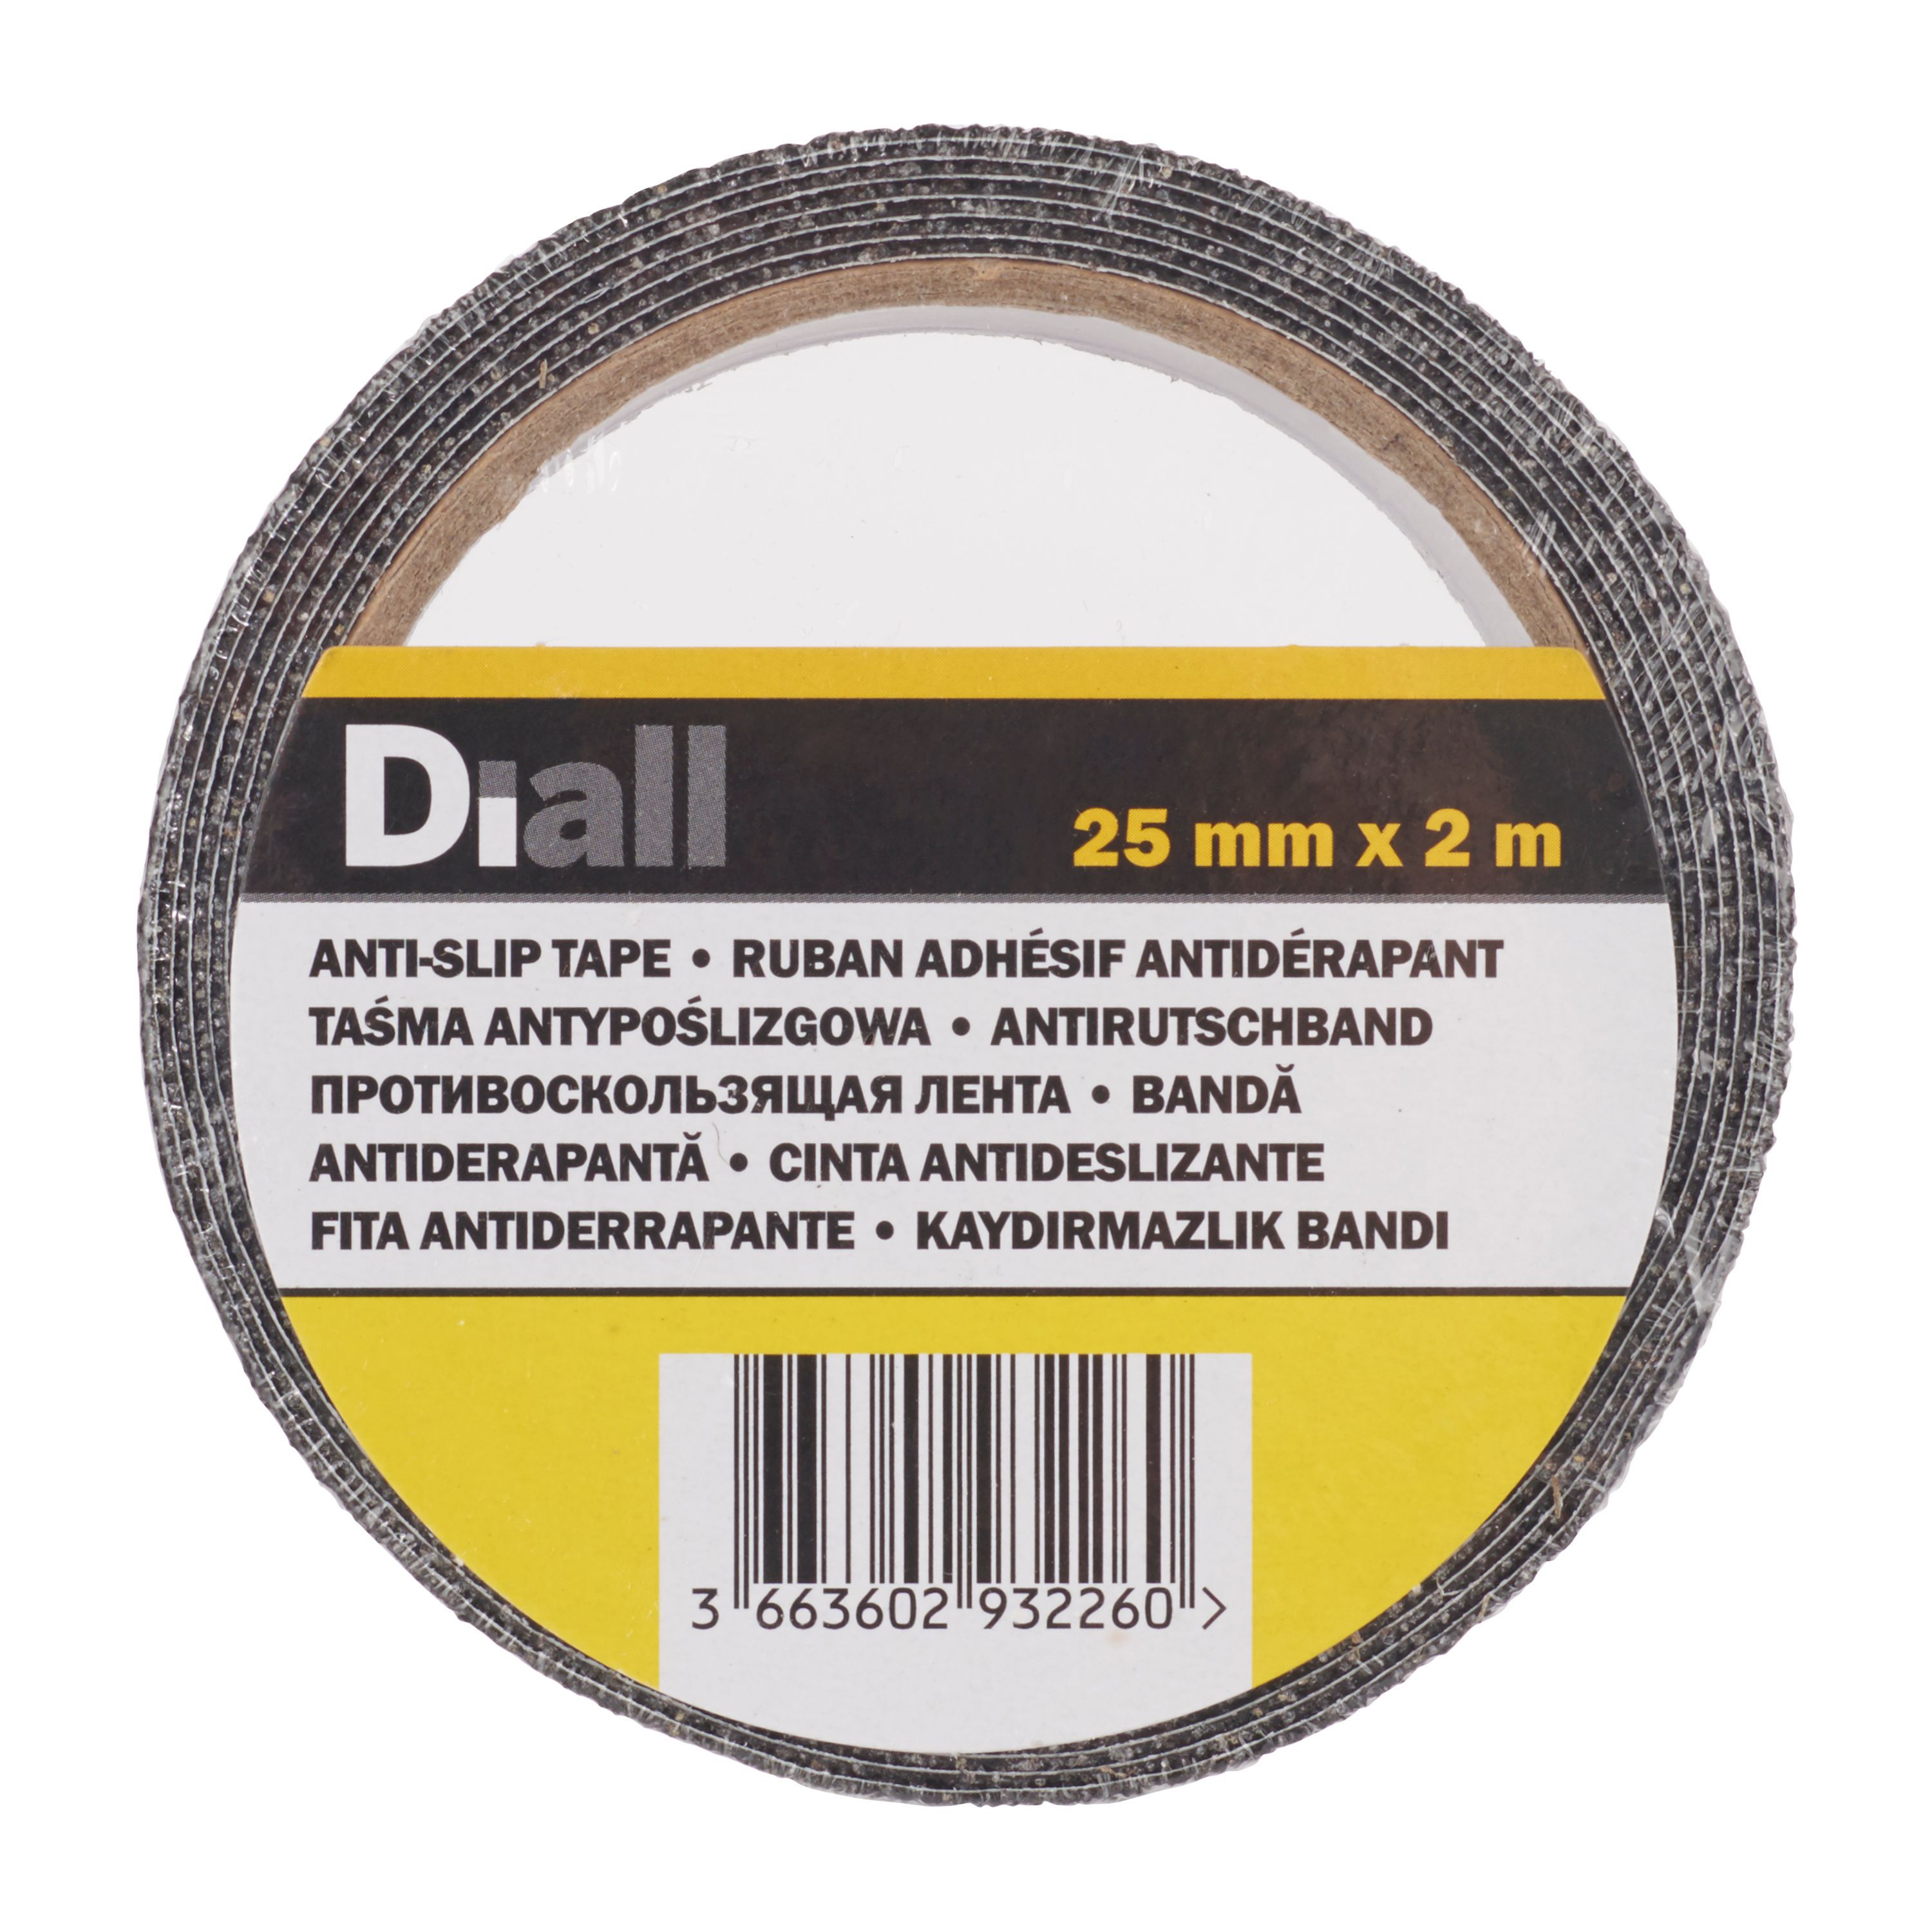 Diall Black Anti-slip Tape (L)2m (W)25mm